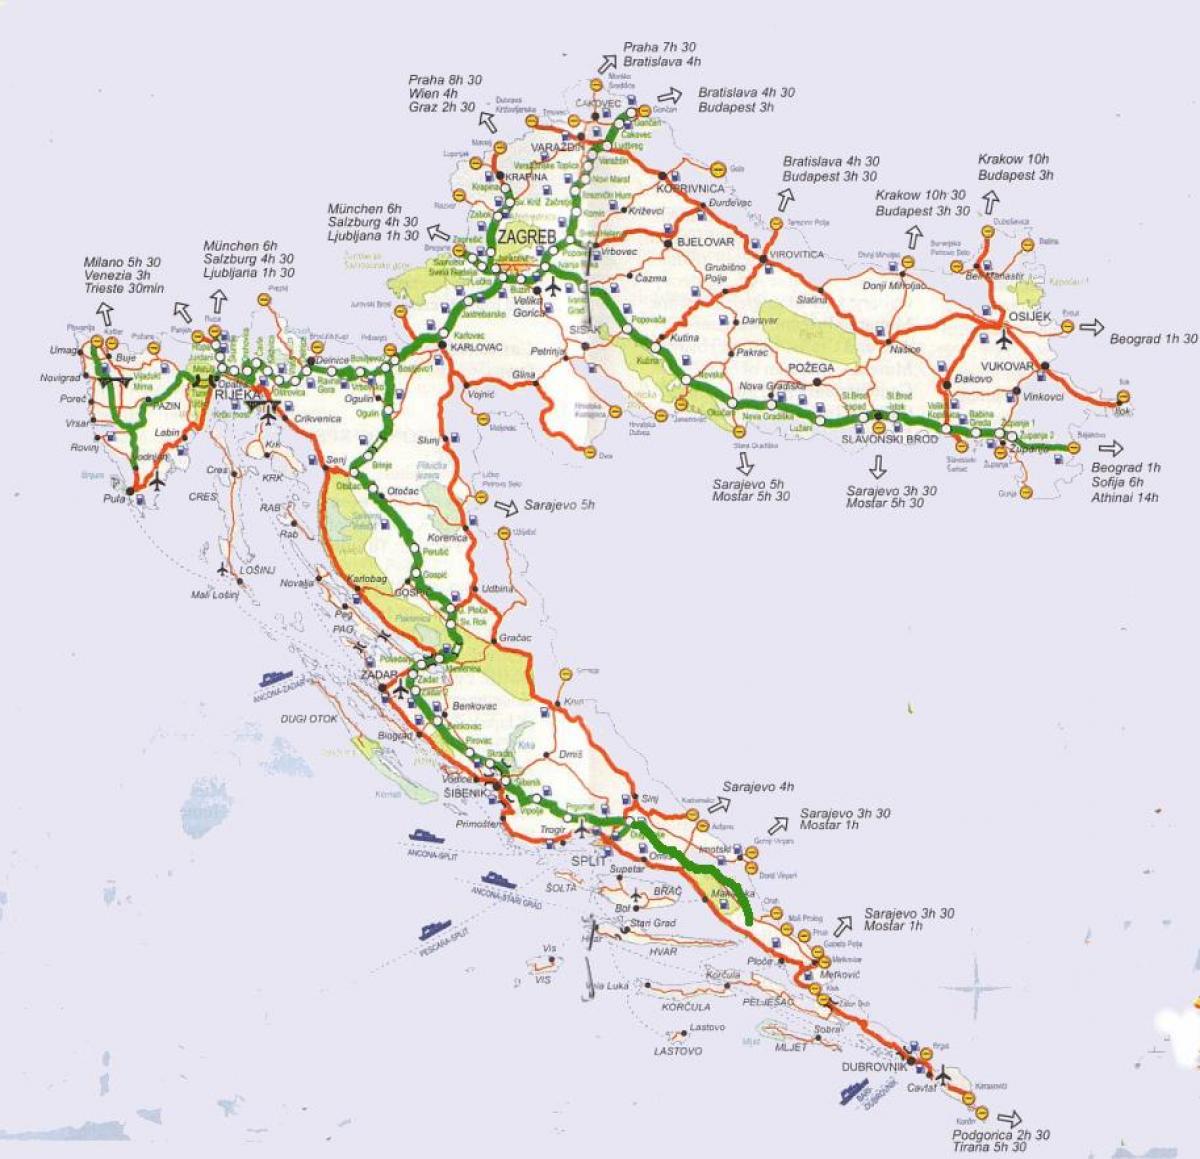 gedetailleerde wegenkaart van kroatië